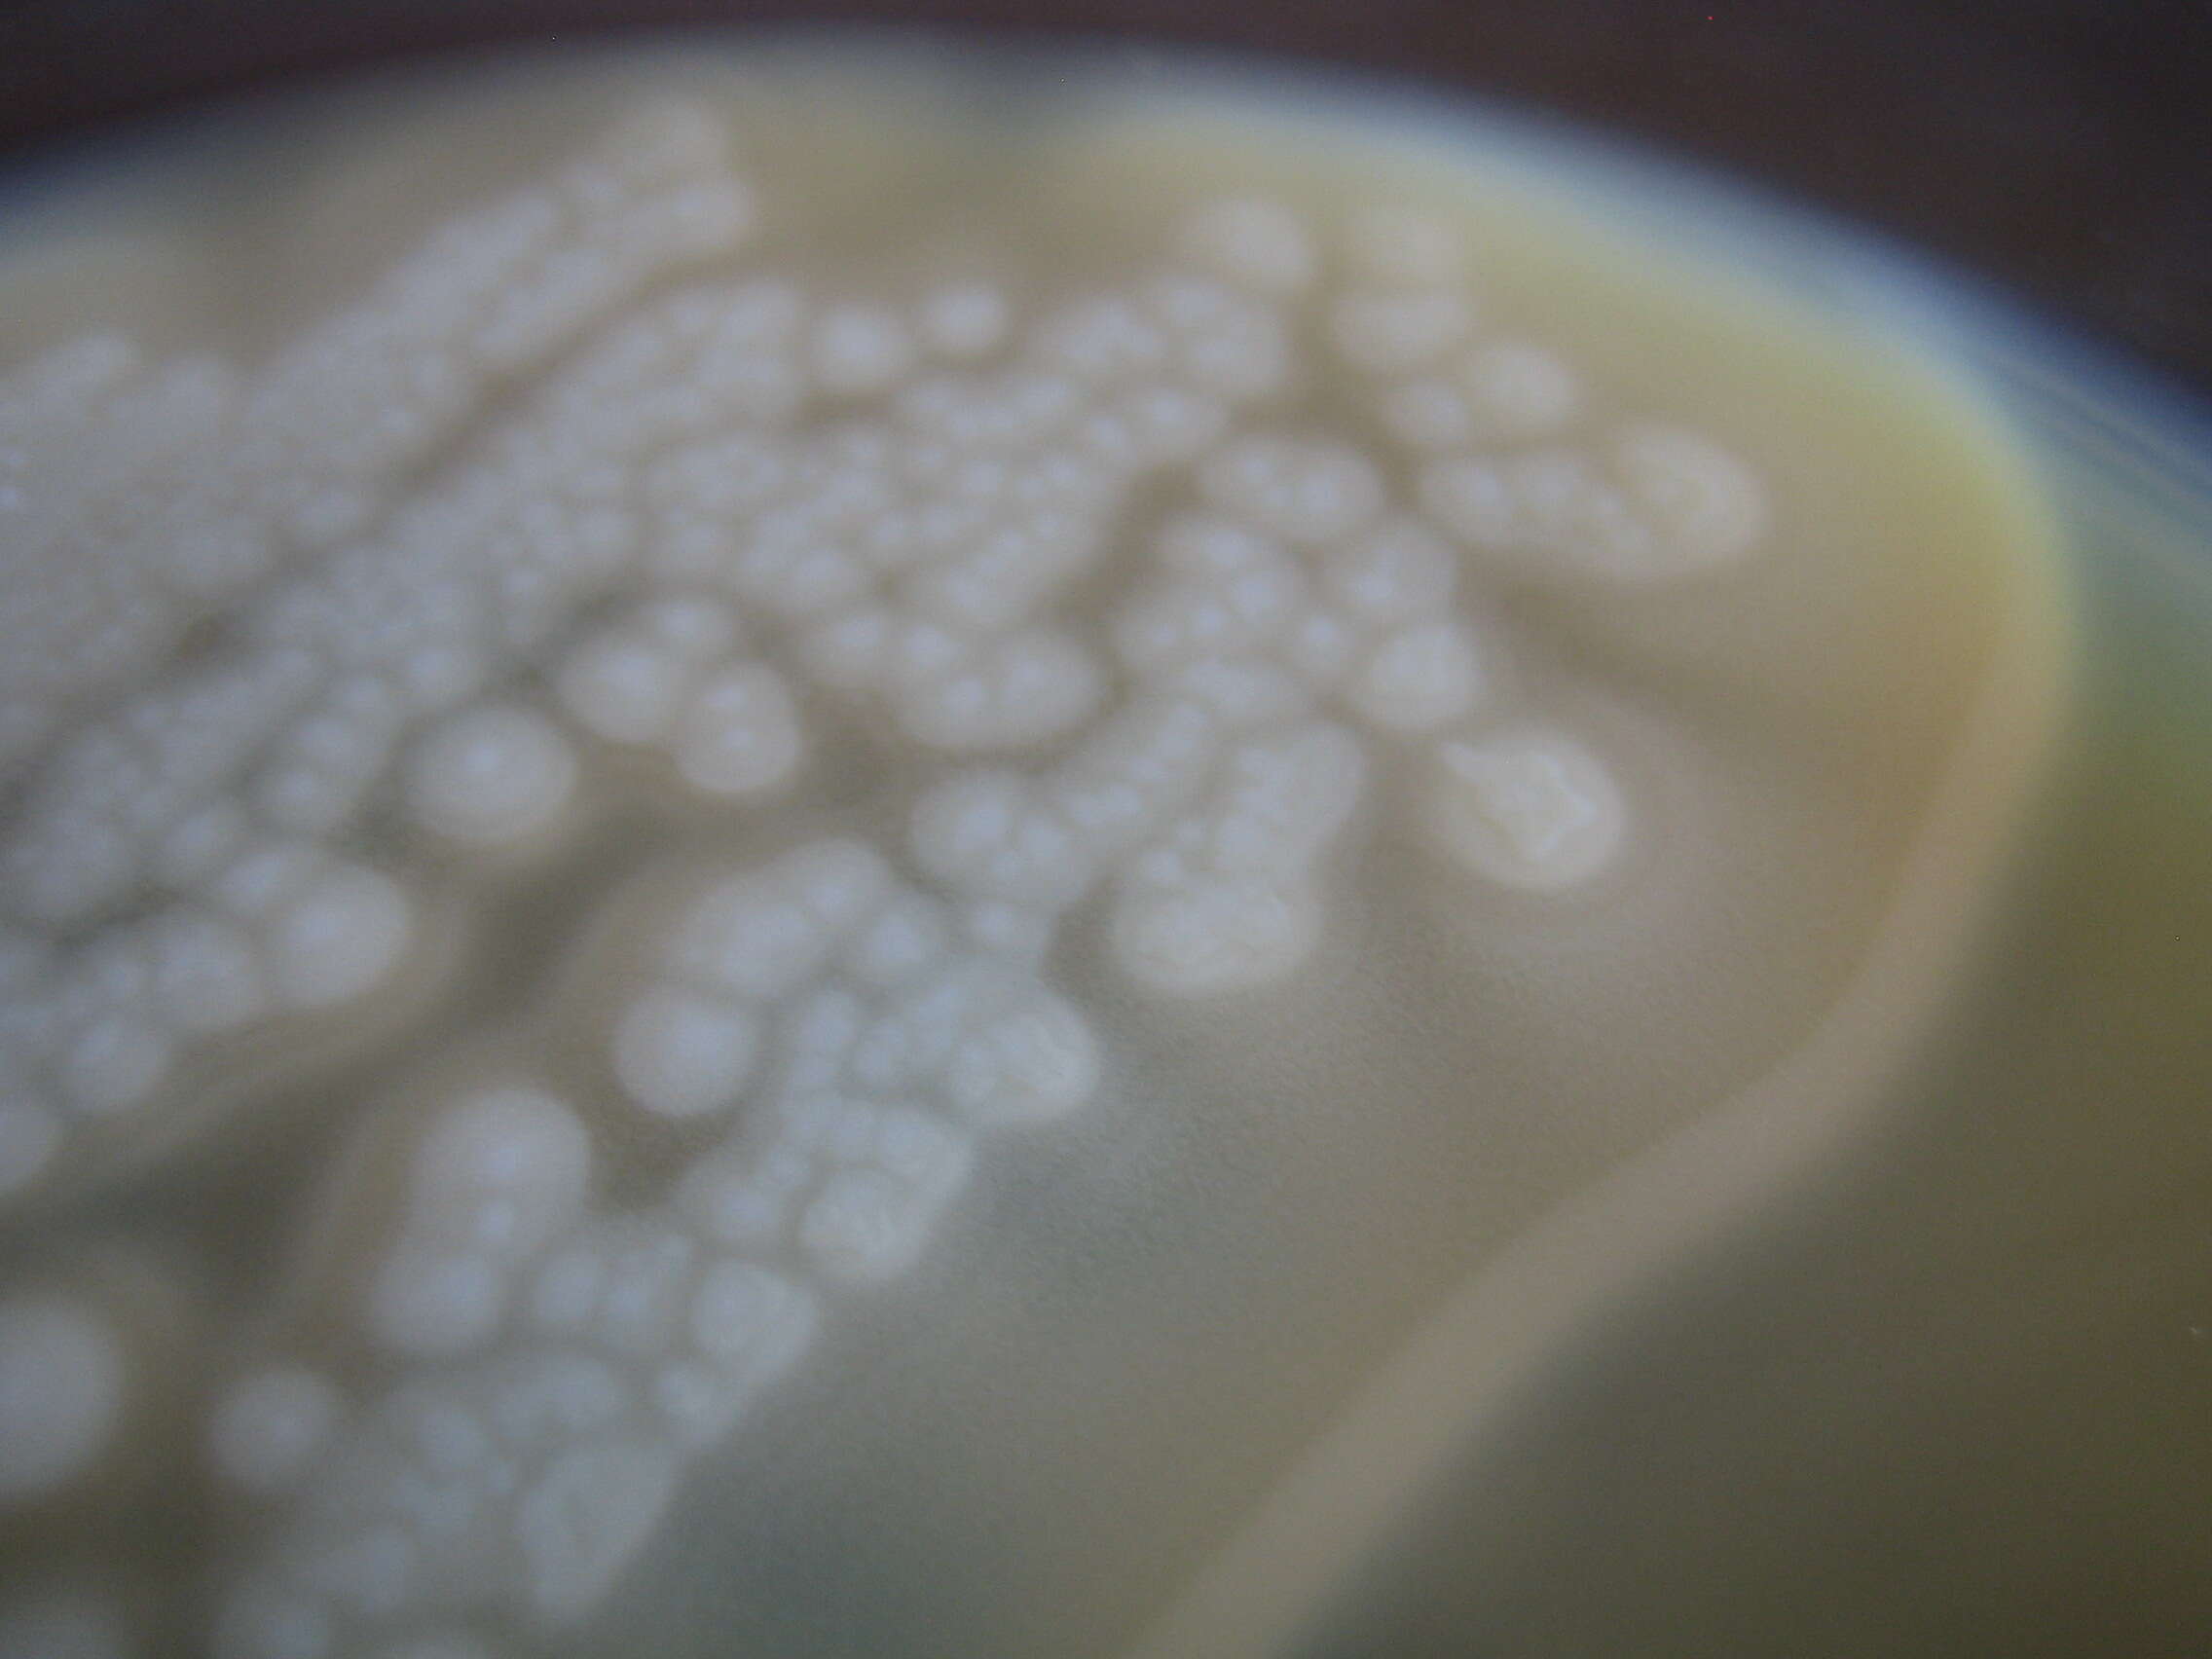 Image of Clostridium botulinum